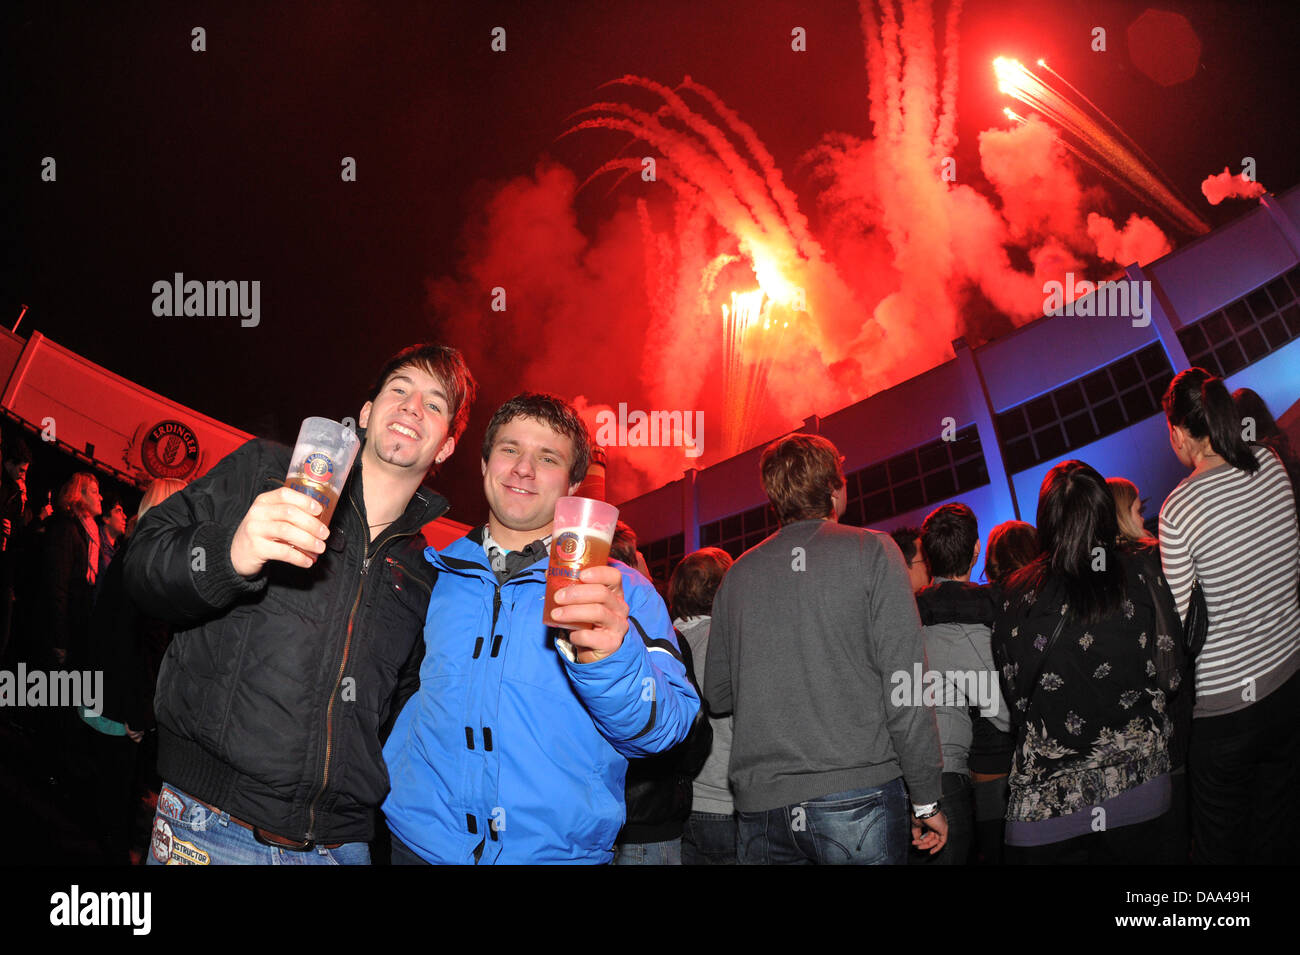 Fans feiern mit Feuerwerk während der Erdinger Champ Party in der Privatbrauerei "Erdinger Weissbraeu" in Erding, Deutschland, 31. Dezember 2010. Mehr als 3000 Besucher kamen, um Musik von der Band Sportfreunde Stiller zu genießen. Foto: Felix Hoerhager Stockfoto